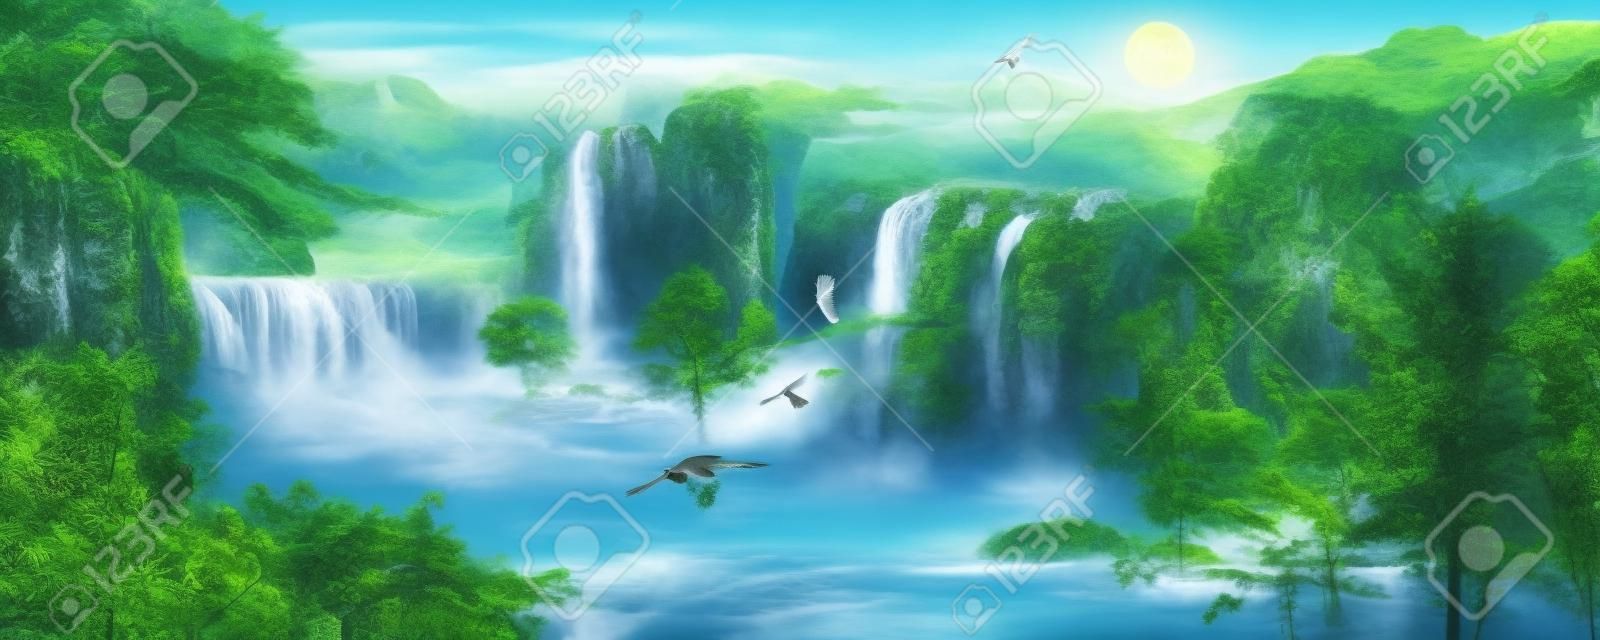 Illustrazione del paesaggio - cascata, foresta, montagne, uccelli in volo